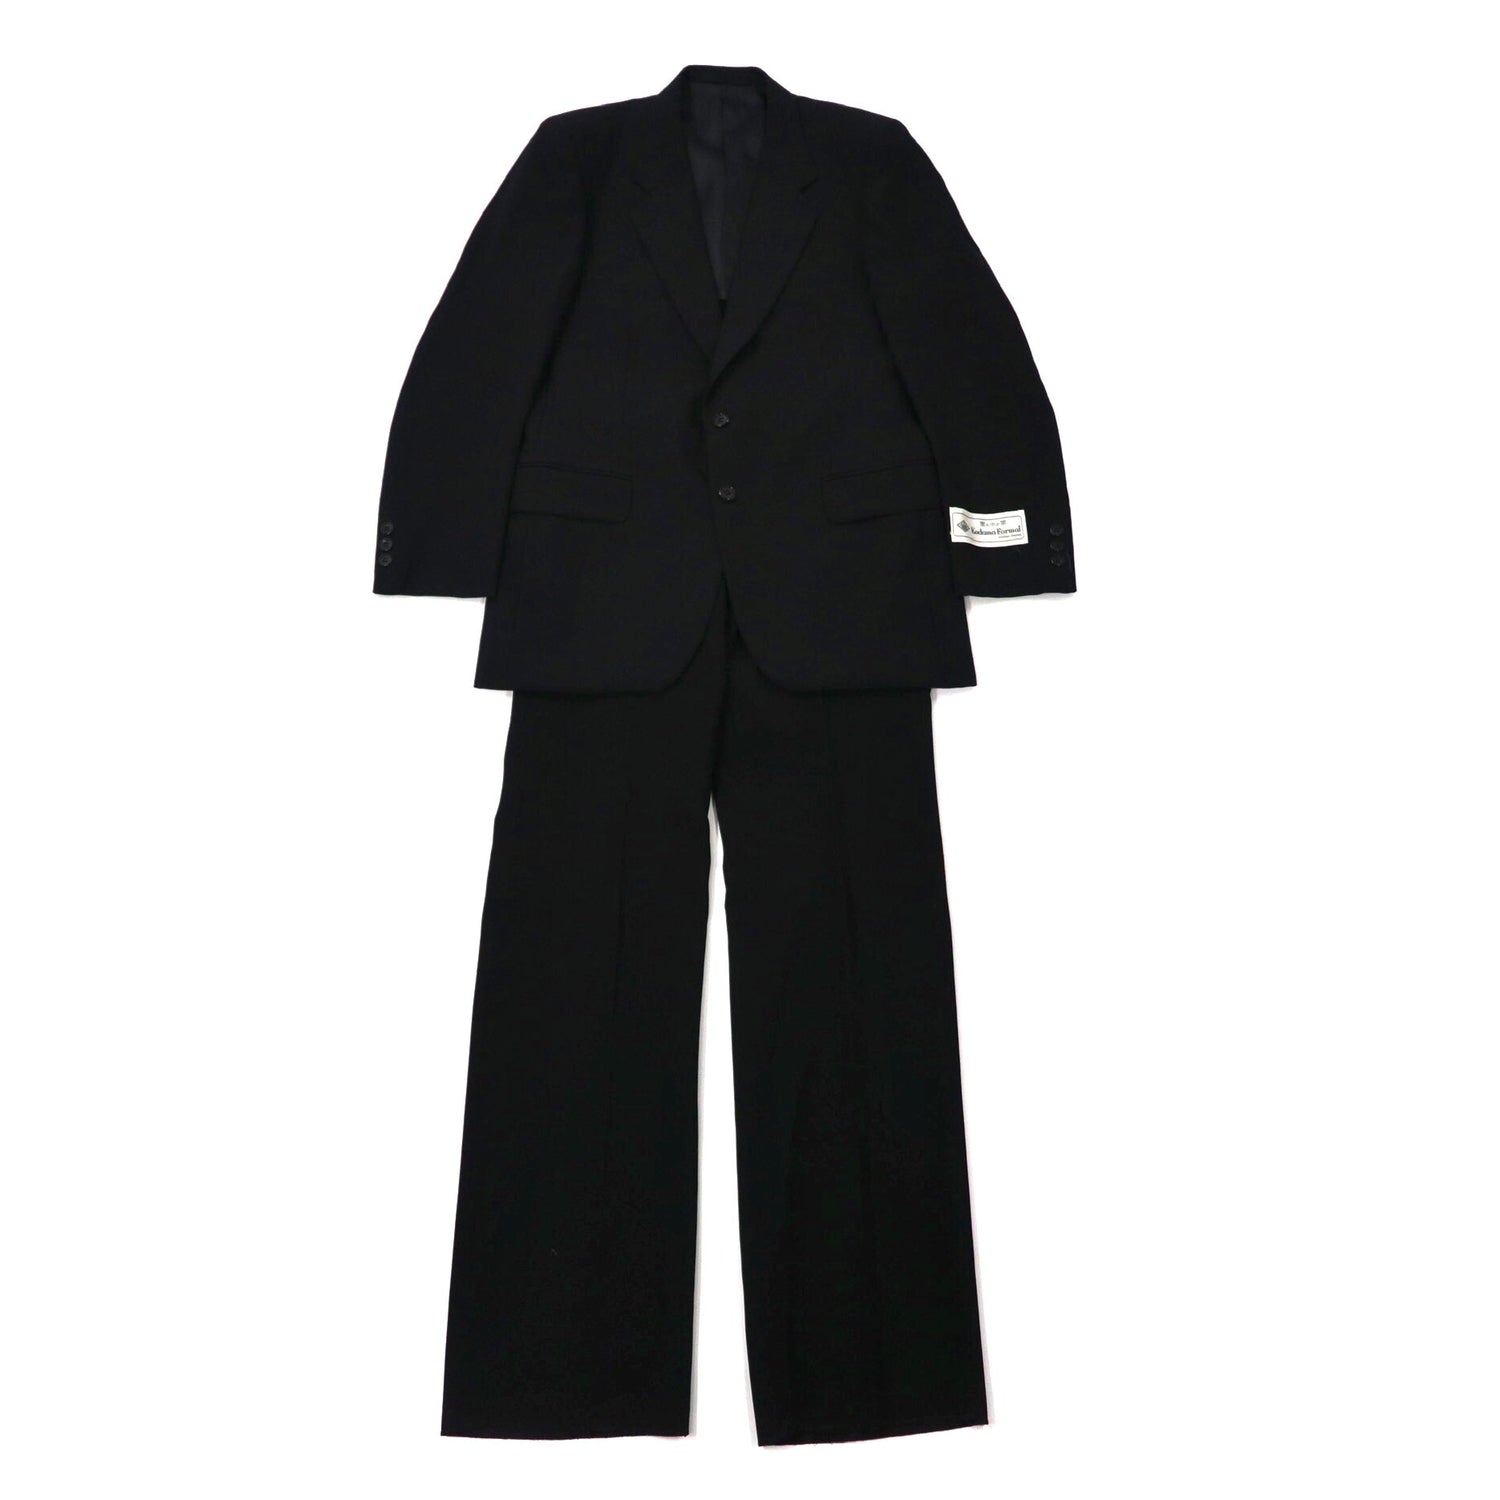 ◆【美品】メンズジャケットスーツ ブラック Kodama formal